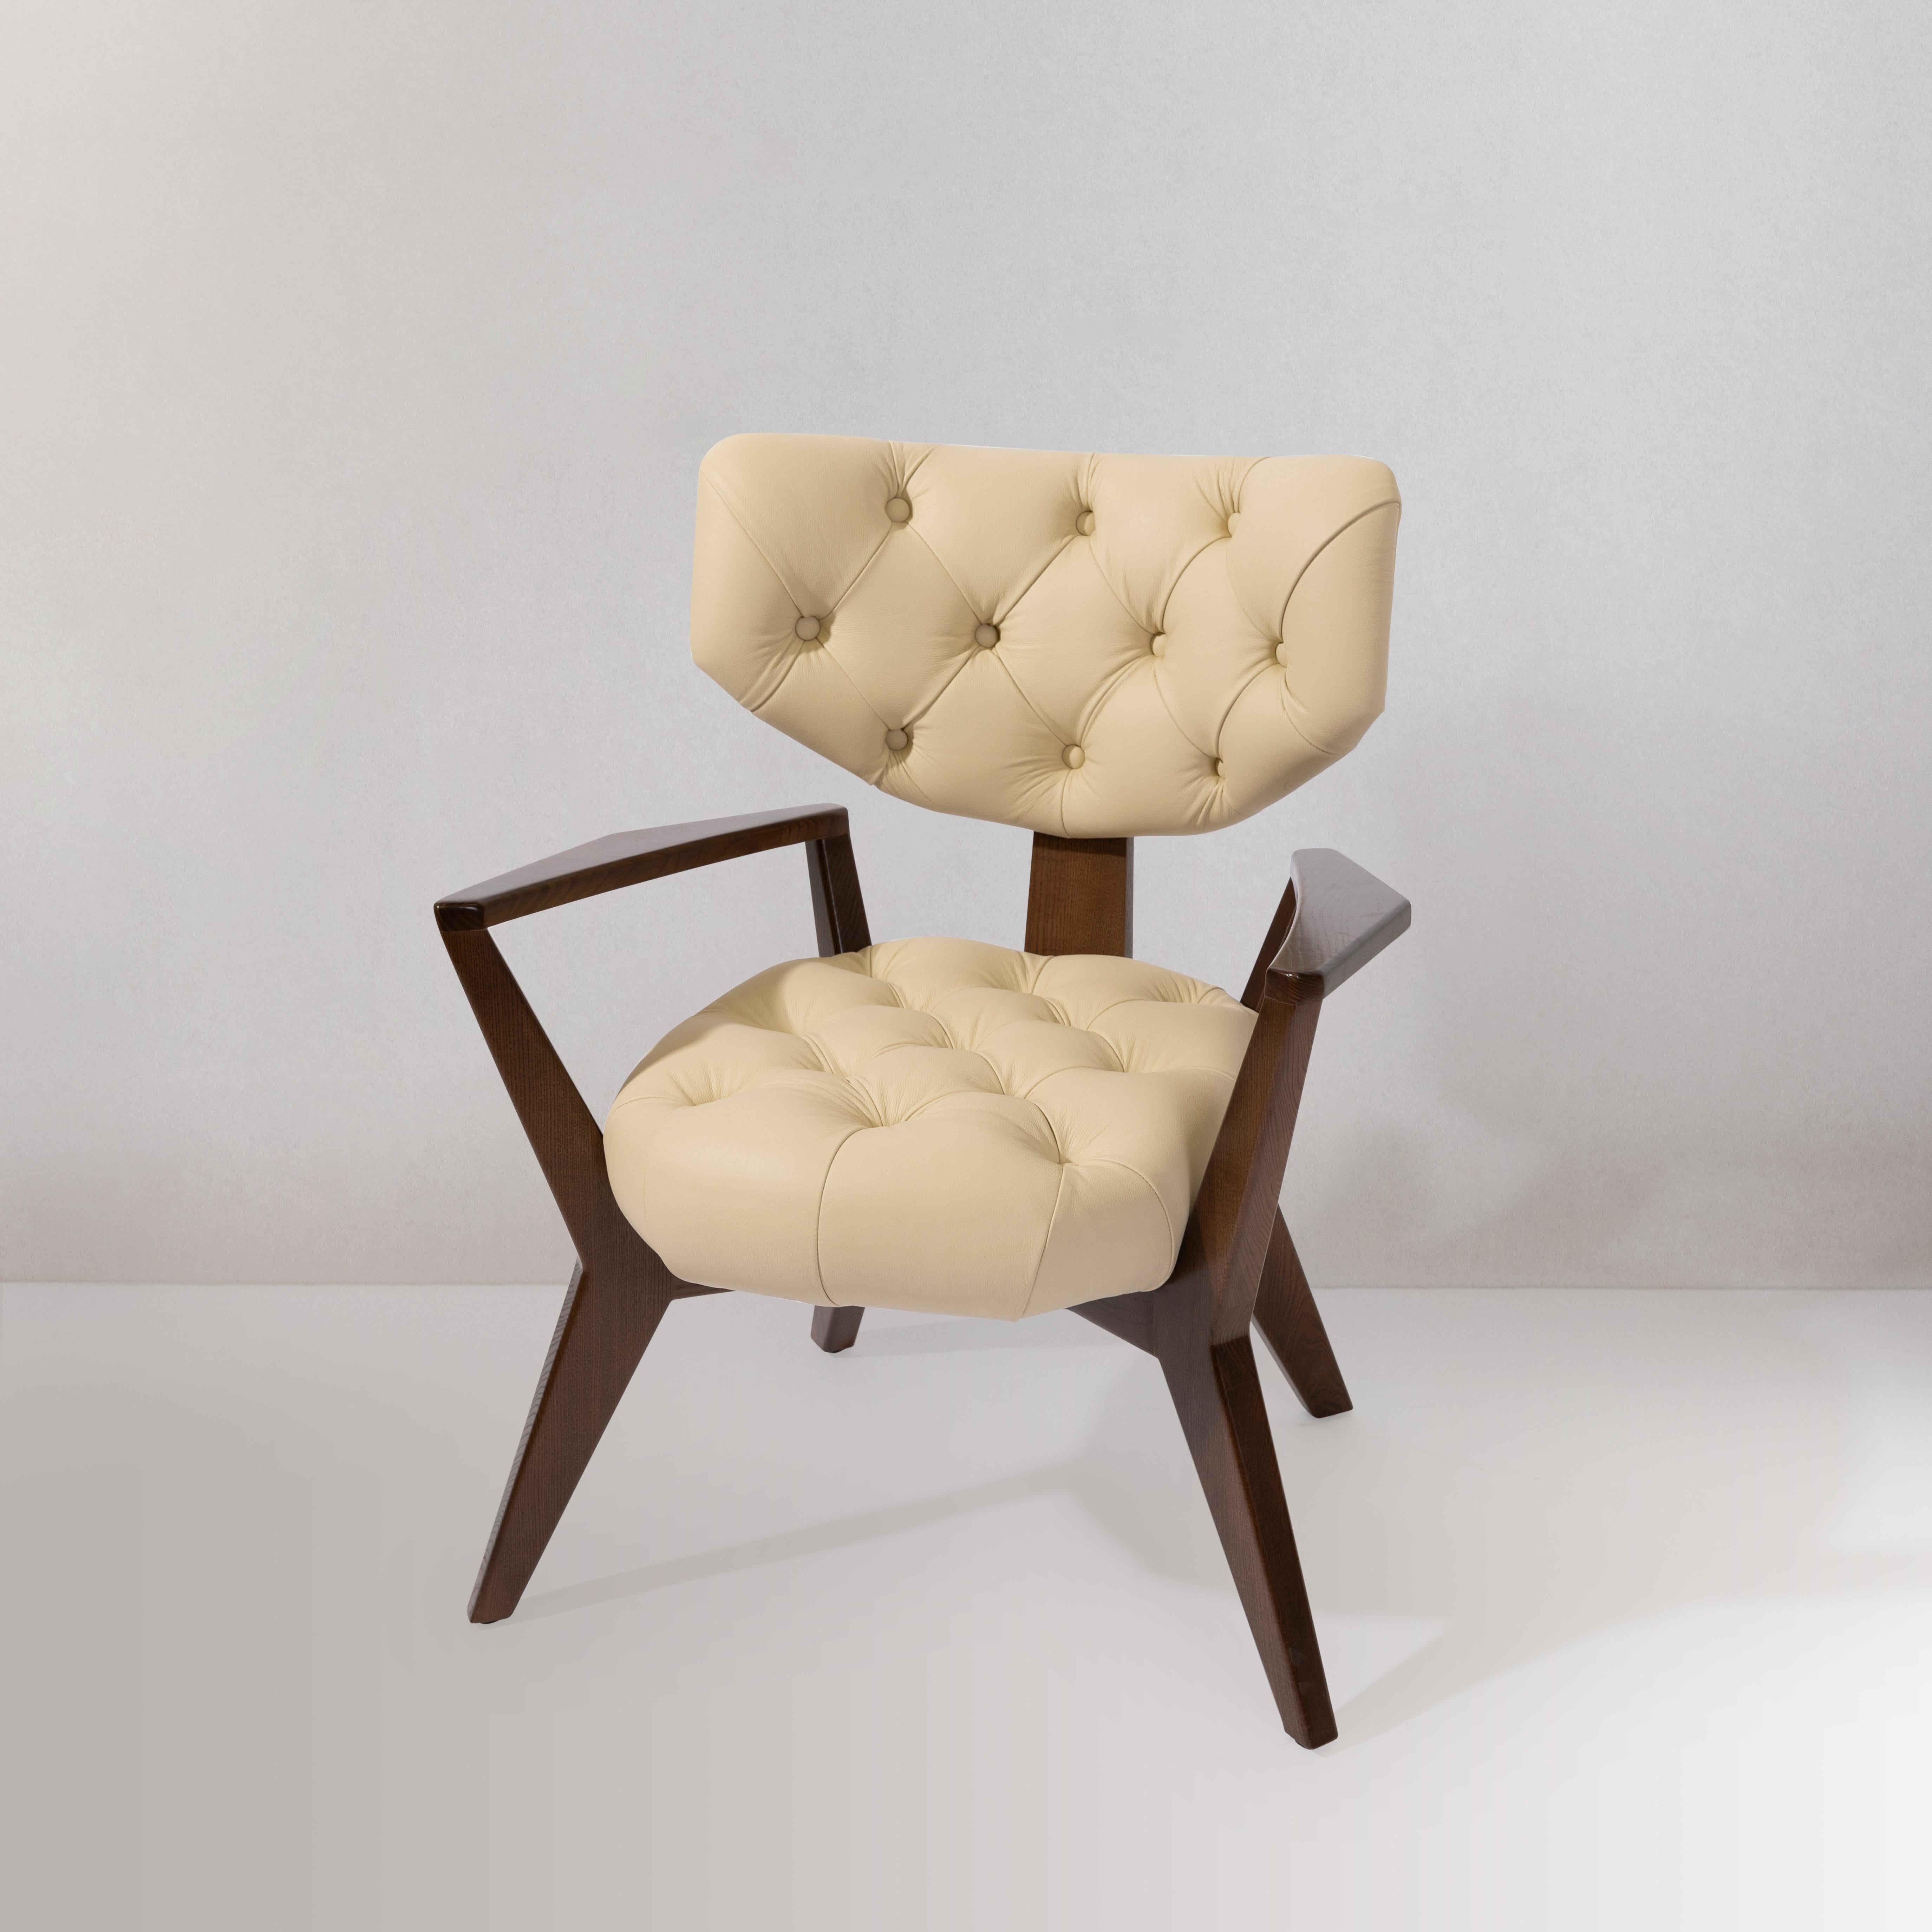 La chaise Kendall est incontestablement conçue pour mettre en valeur la salle à manger ou l'espace de vie moderne. Fabriquées avec du cuir italien sur mesure et dans un style mid-century, ces chaises s'intègreront parfaitement dans votre espace